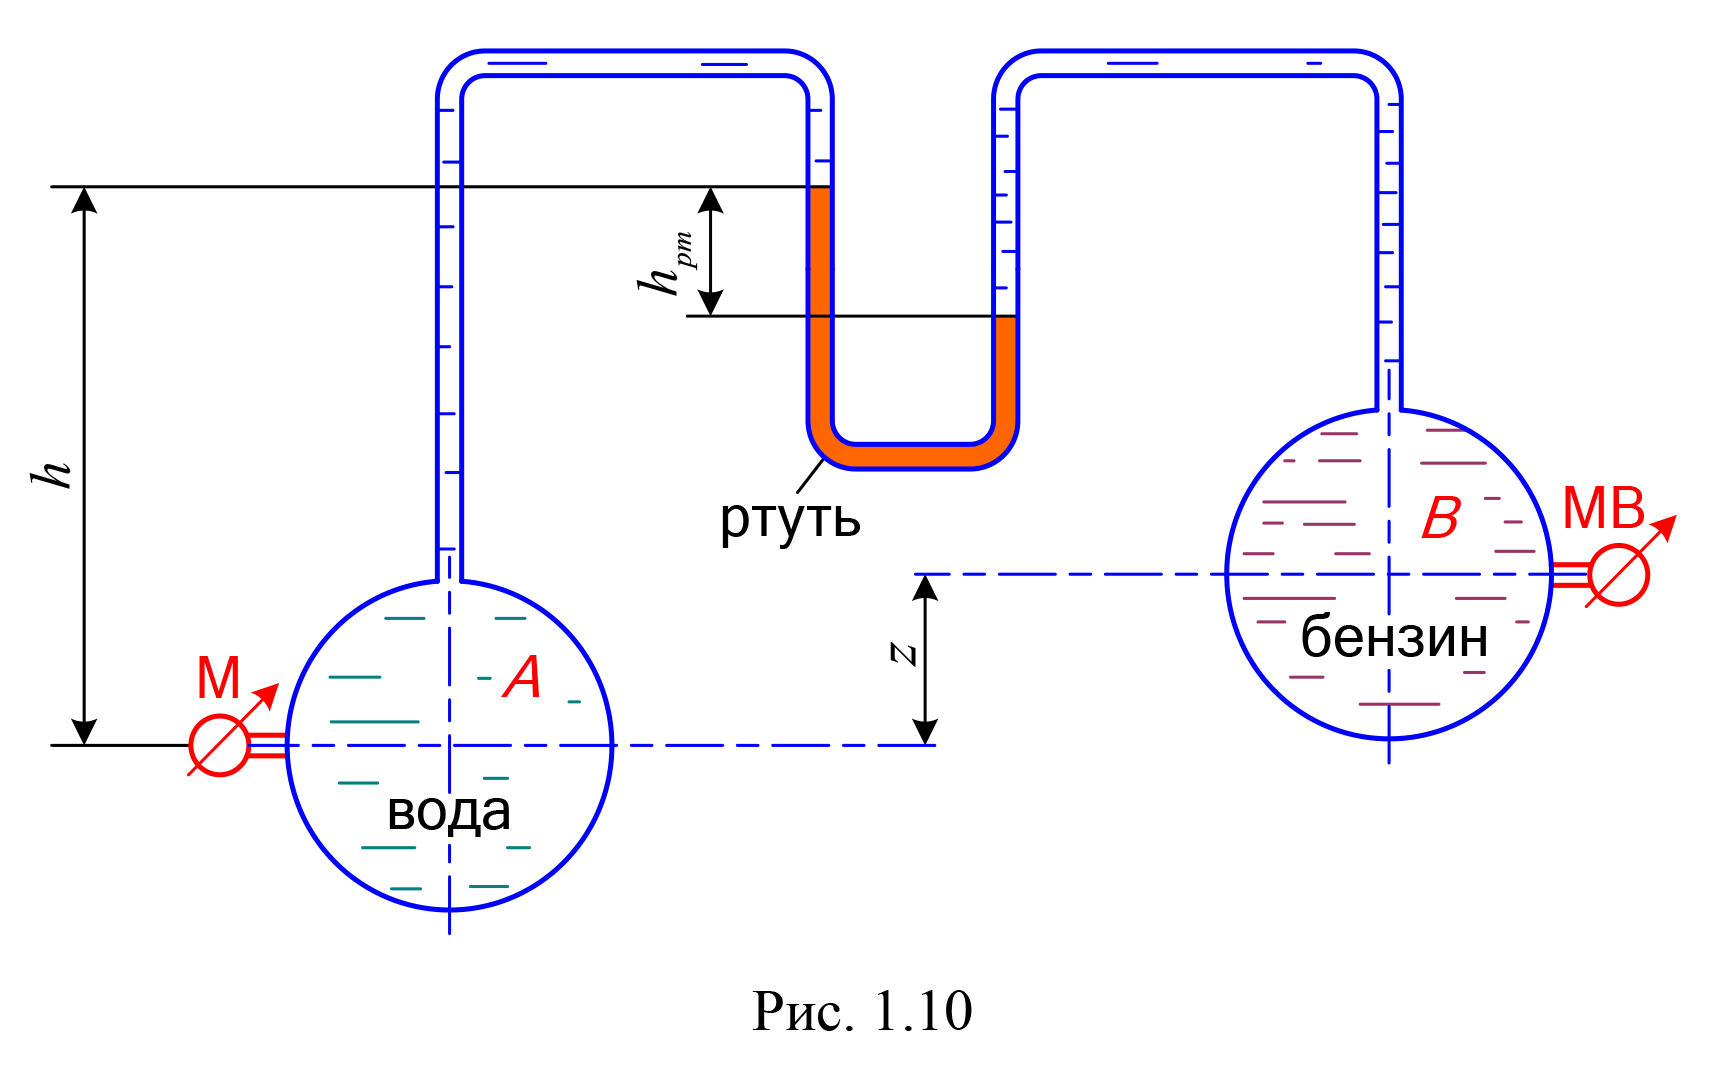 К двум трубопроводам А и В, заполненным водой и бензином, подключен U-образный ртутный манометр, показание которое hрт. На уровне оси трубопровода А установлен манометр, показание которого рман. Ось трубы В находится выше оси трубы А на расстоянии z (рис. 1.10). Определить, какое давление, манометрическое или вакуумметрическое, показывает мановакуумметр (МВ), установленные на уровне оси трубы В, если высота уровня ртути в левом колене манометра относительно оси трубы А равно h. Принять плотности жидкостей: воды ρ = 10³ кг/м³; ртути ρрт = 13,6·10³ кг/м³; бензина ρбенз = 720 кг/м³.